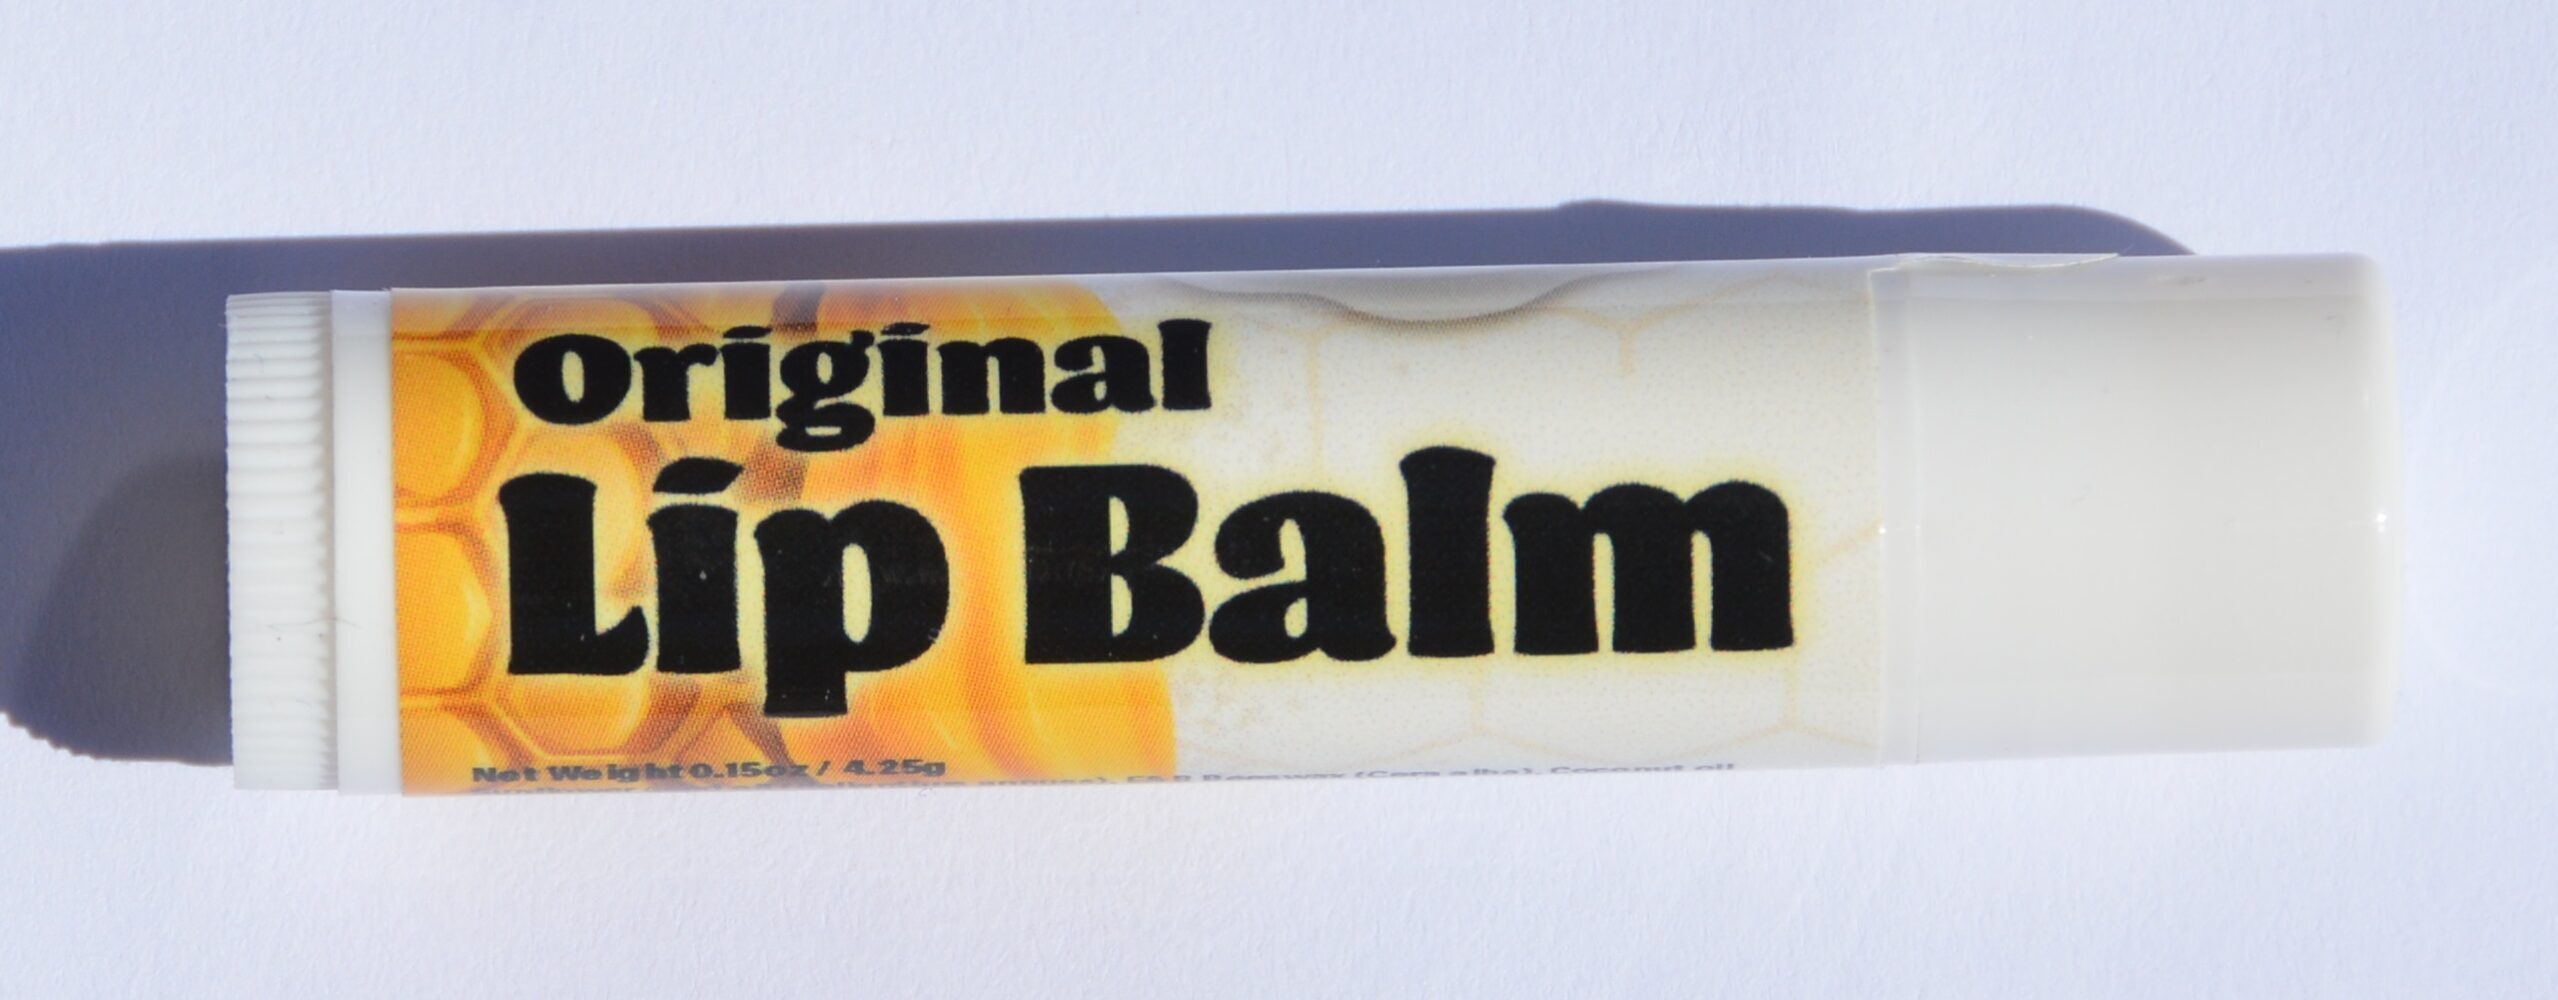 Original Lip Balm